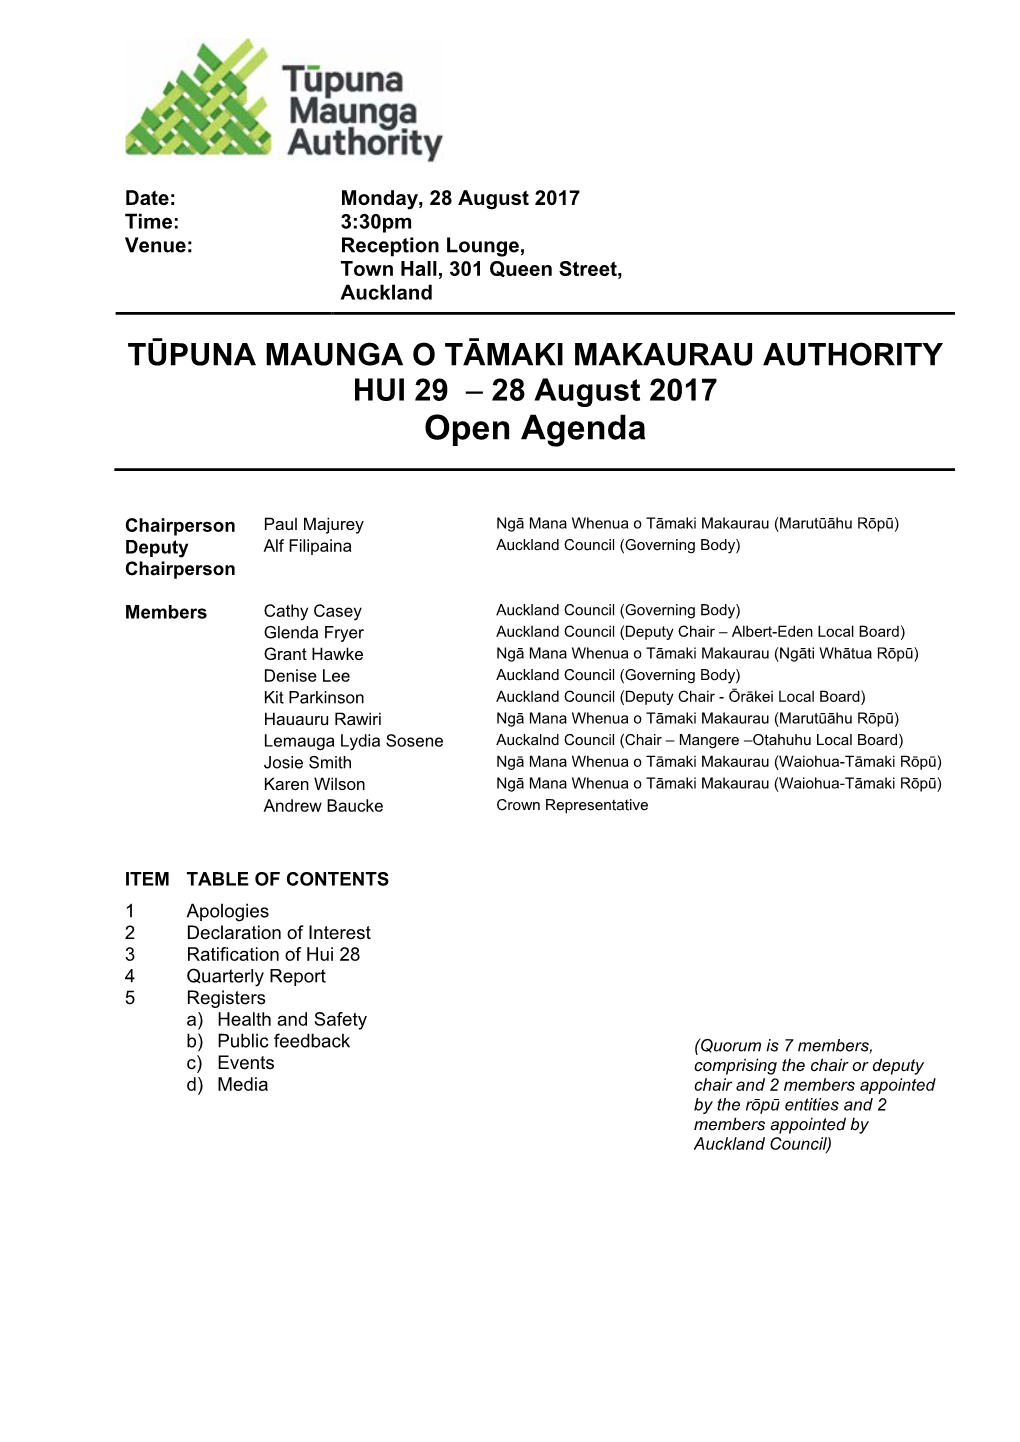 Agenda of Maunga Authority